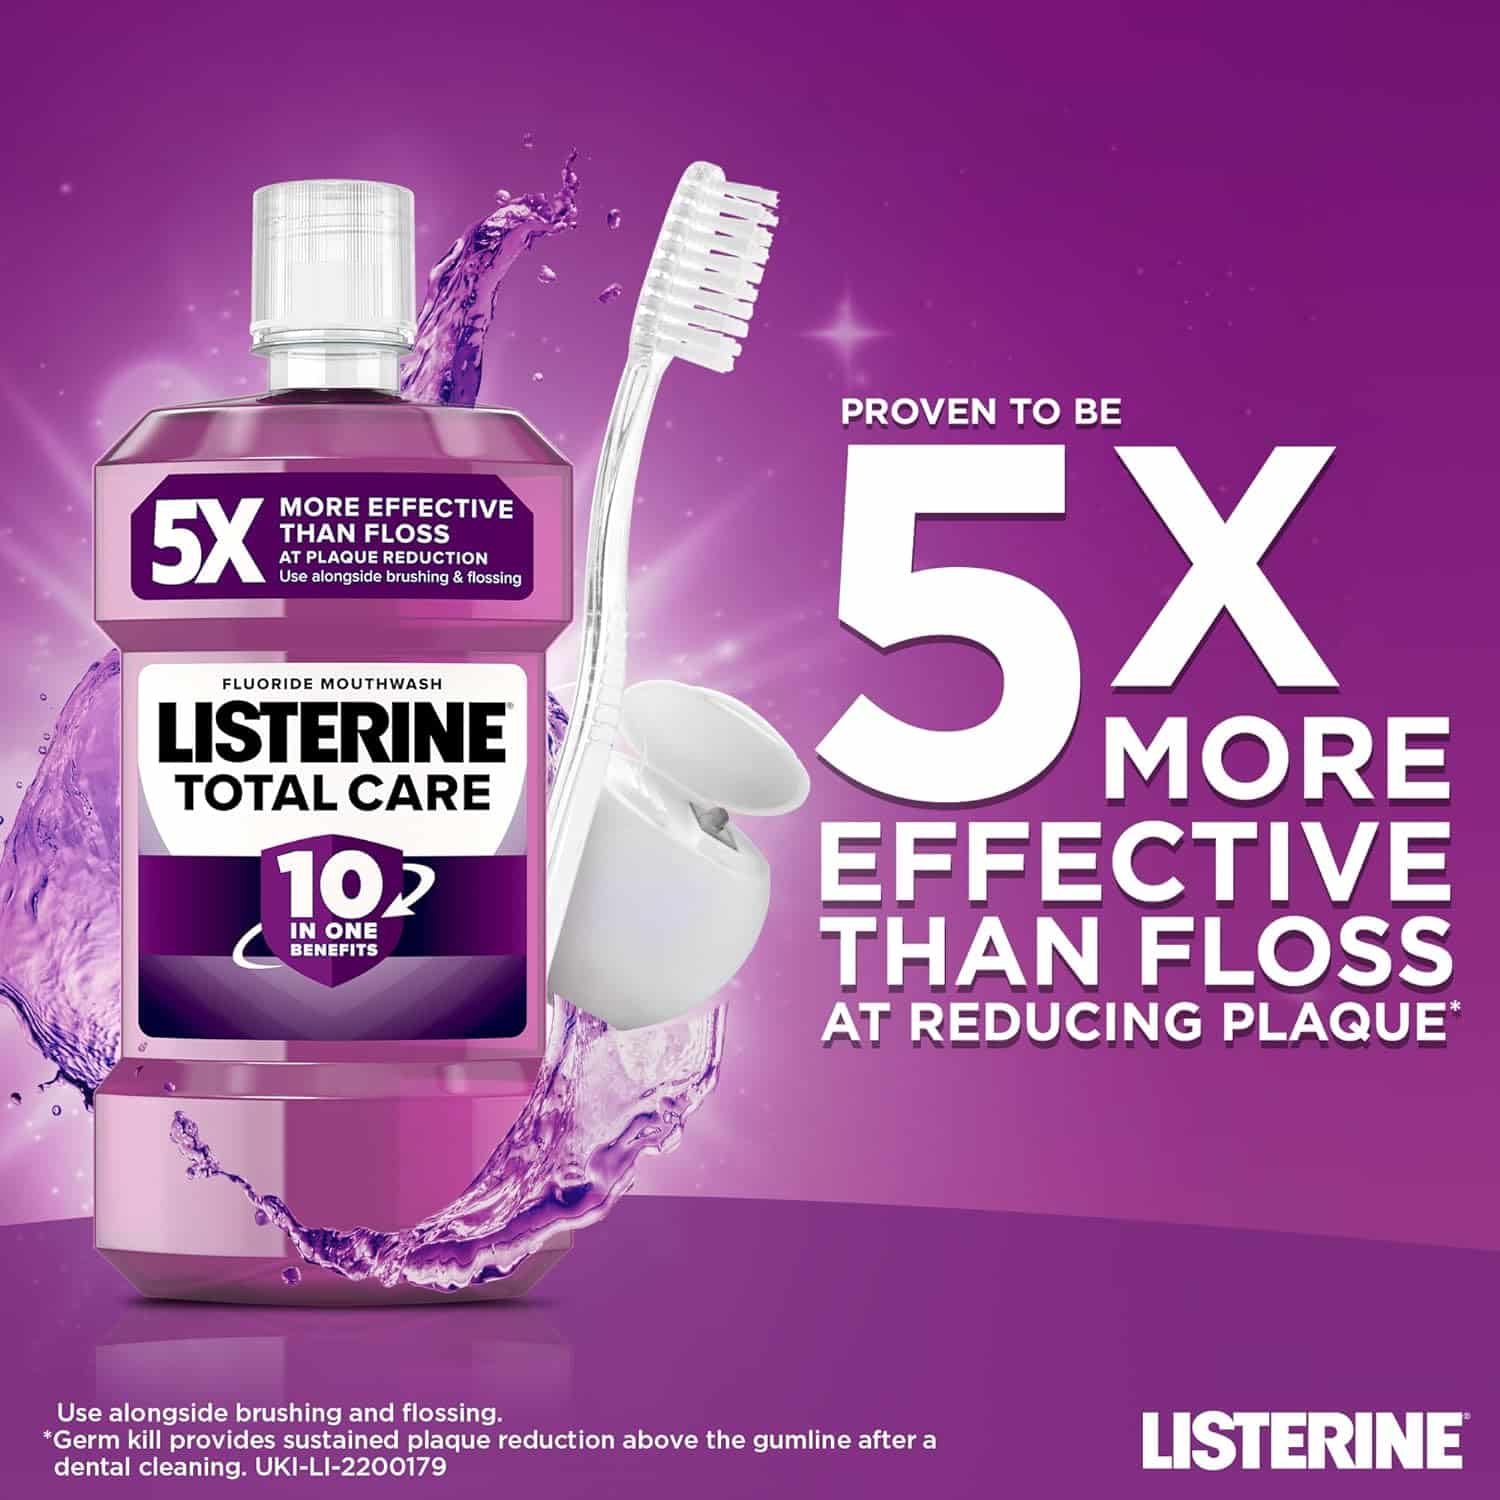 Listerine Total Care Mouthwash 1L-0101 - 3x (3 QTY)